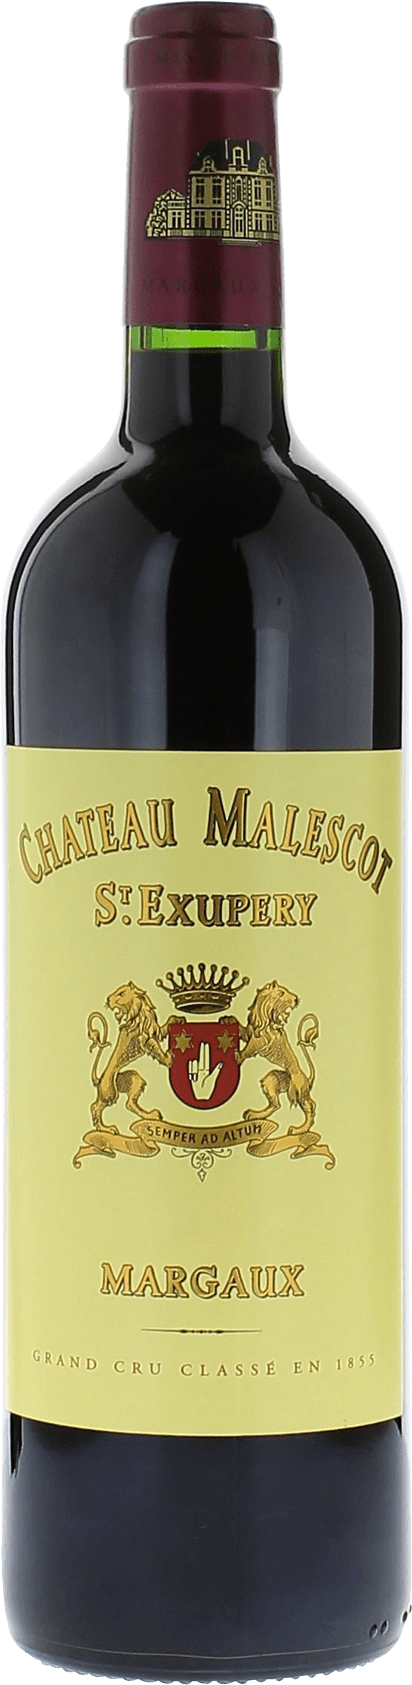 Malescot saint exupery 2012 3me Grand cru class Margaux, Bordeaux rouge